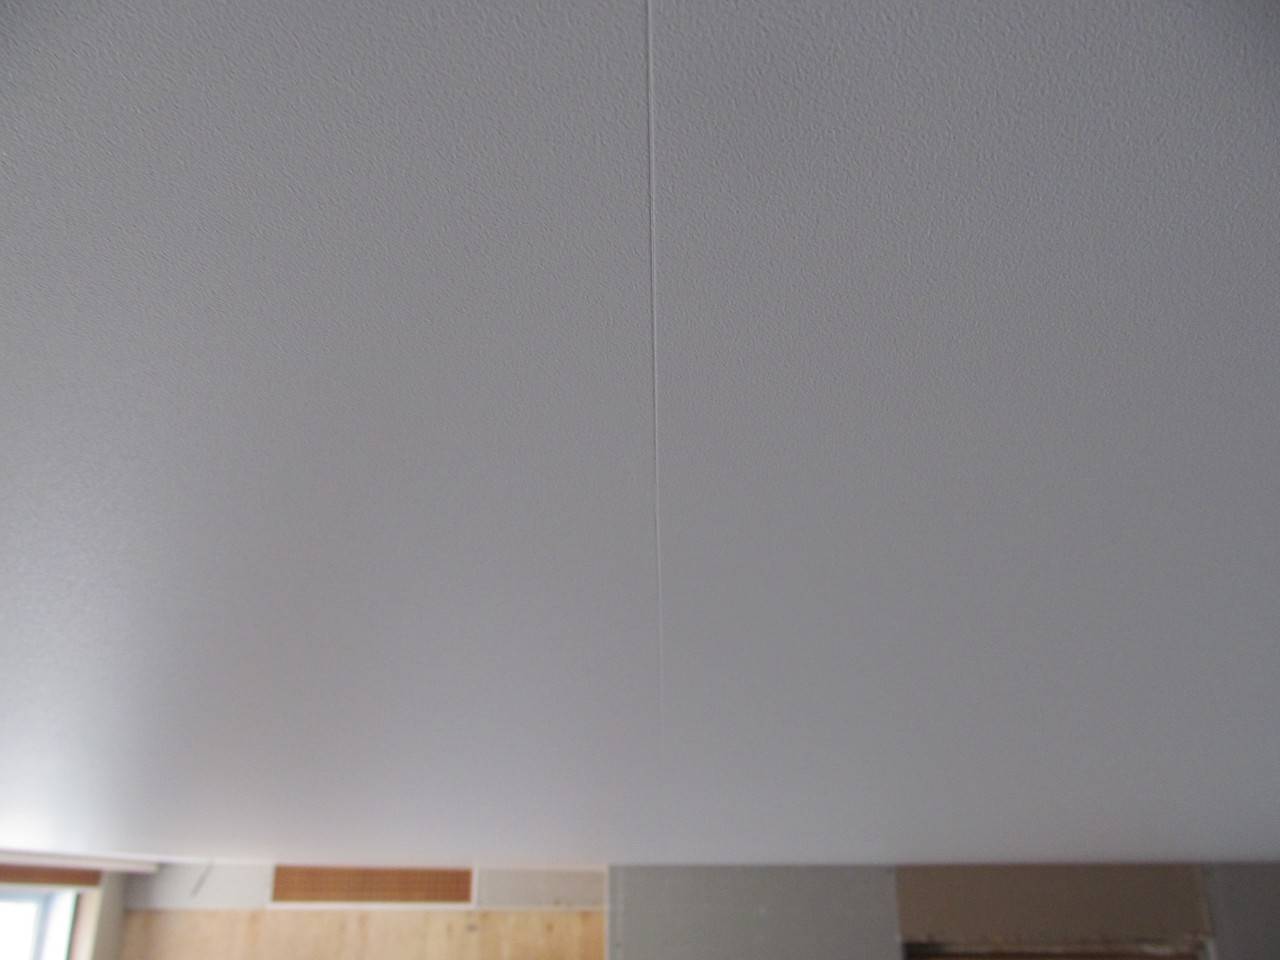 Натяжной потолок со швом — фото и видео про шовную поверхность